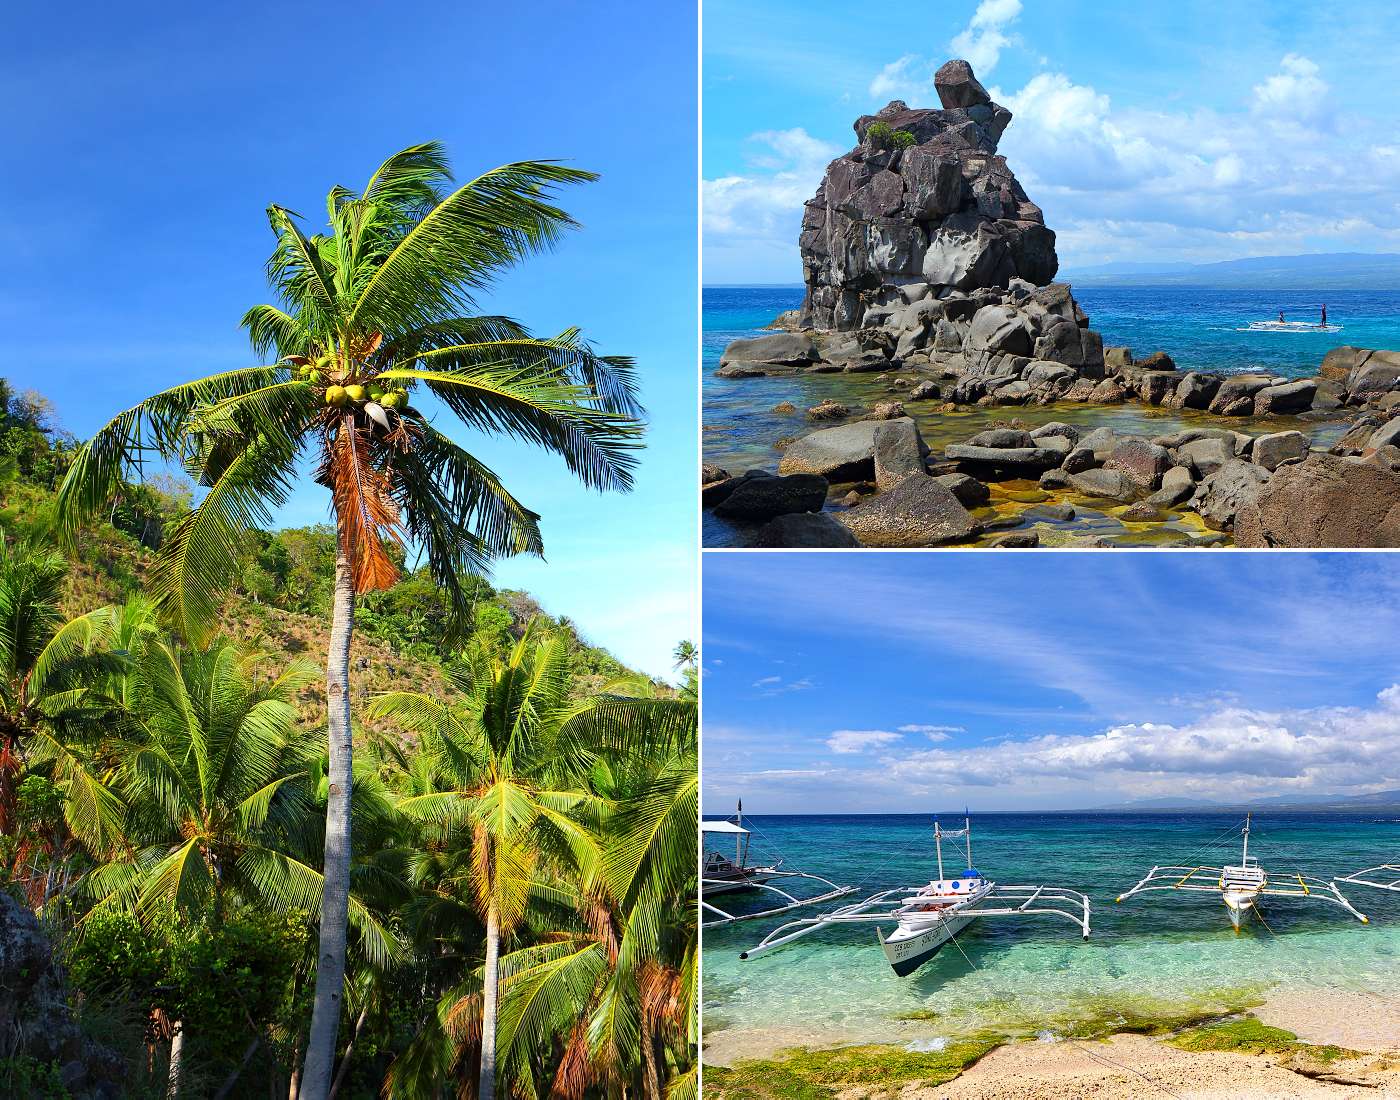 Kolekce snímů z ostrova Apo - pobřeží, rybářské lodě, pláže a krajina.